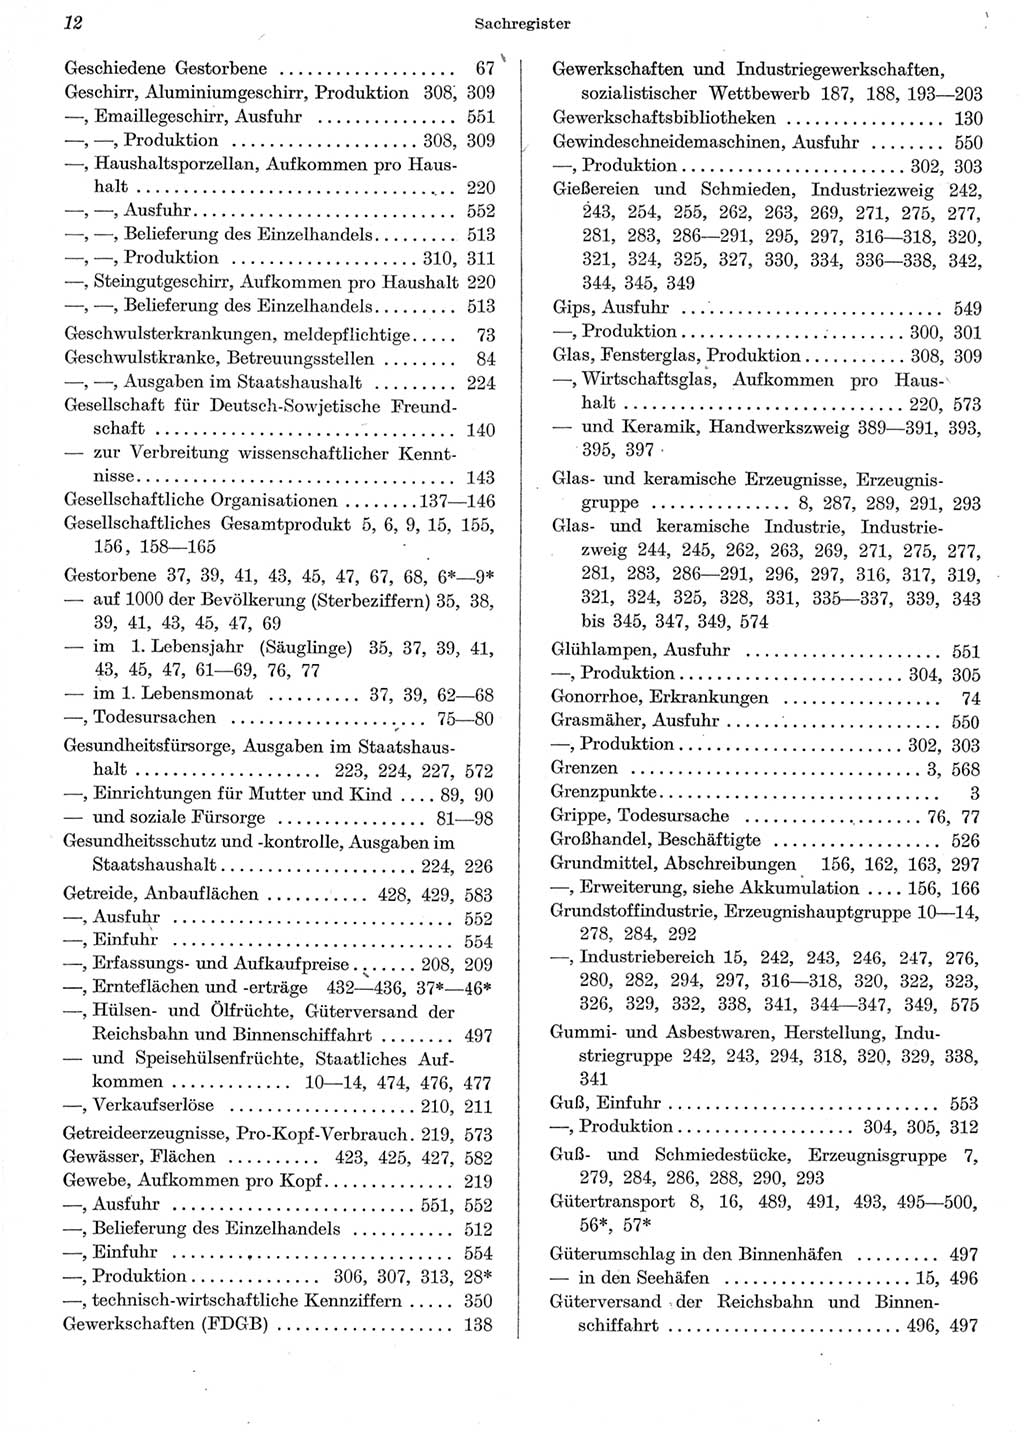 Statistisches Jahrbuch der Deutschen Demokratischen Republik (DDR) 1962, Seite 12 (Stat. Jb. DDR 1962, S. 12)